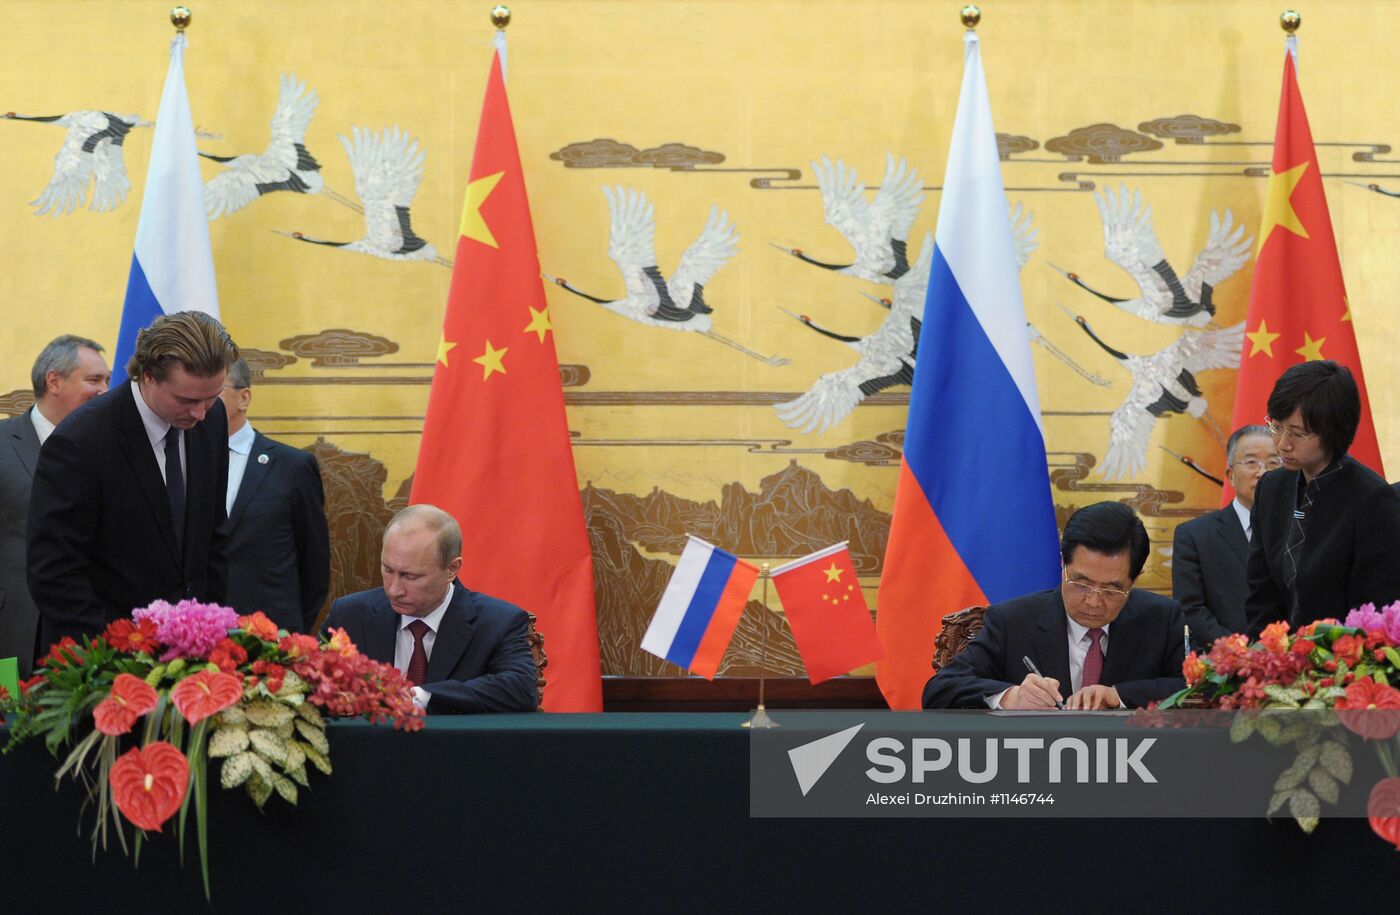 Vladimir Putin pays state visit to China